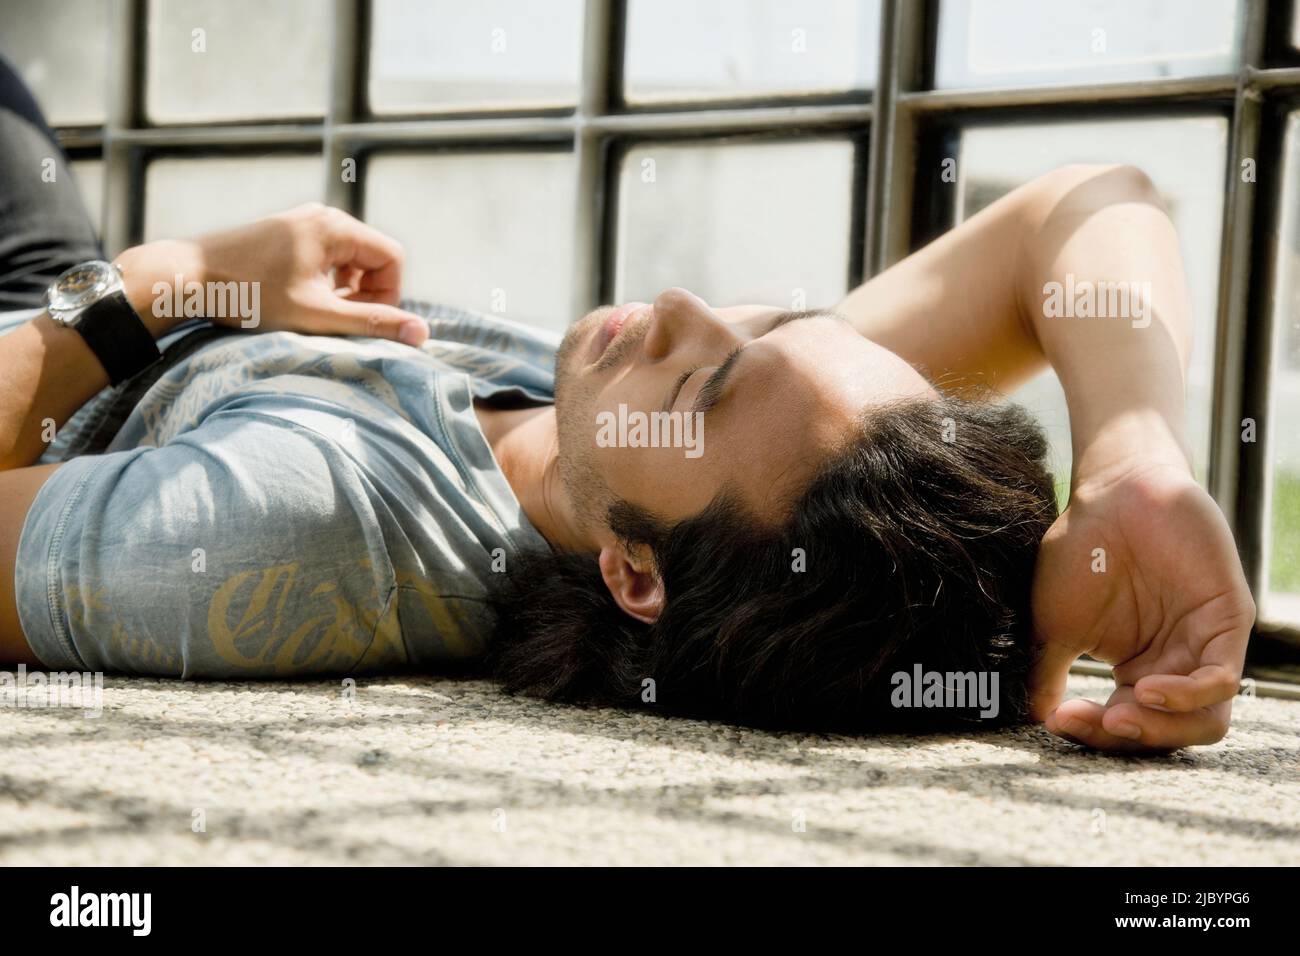 Korean man laying on floor Stock Photo